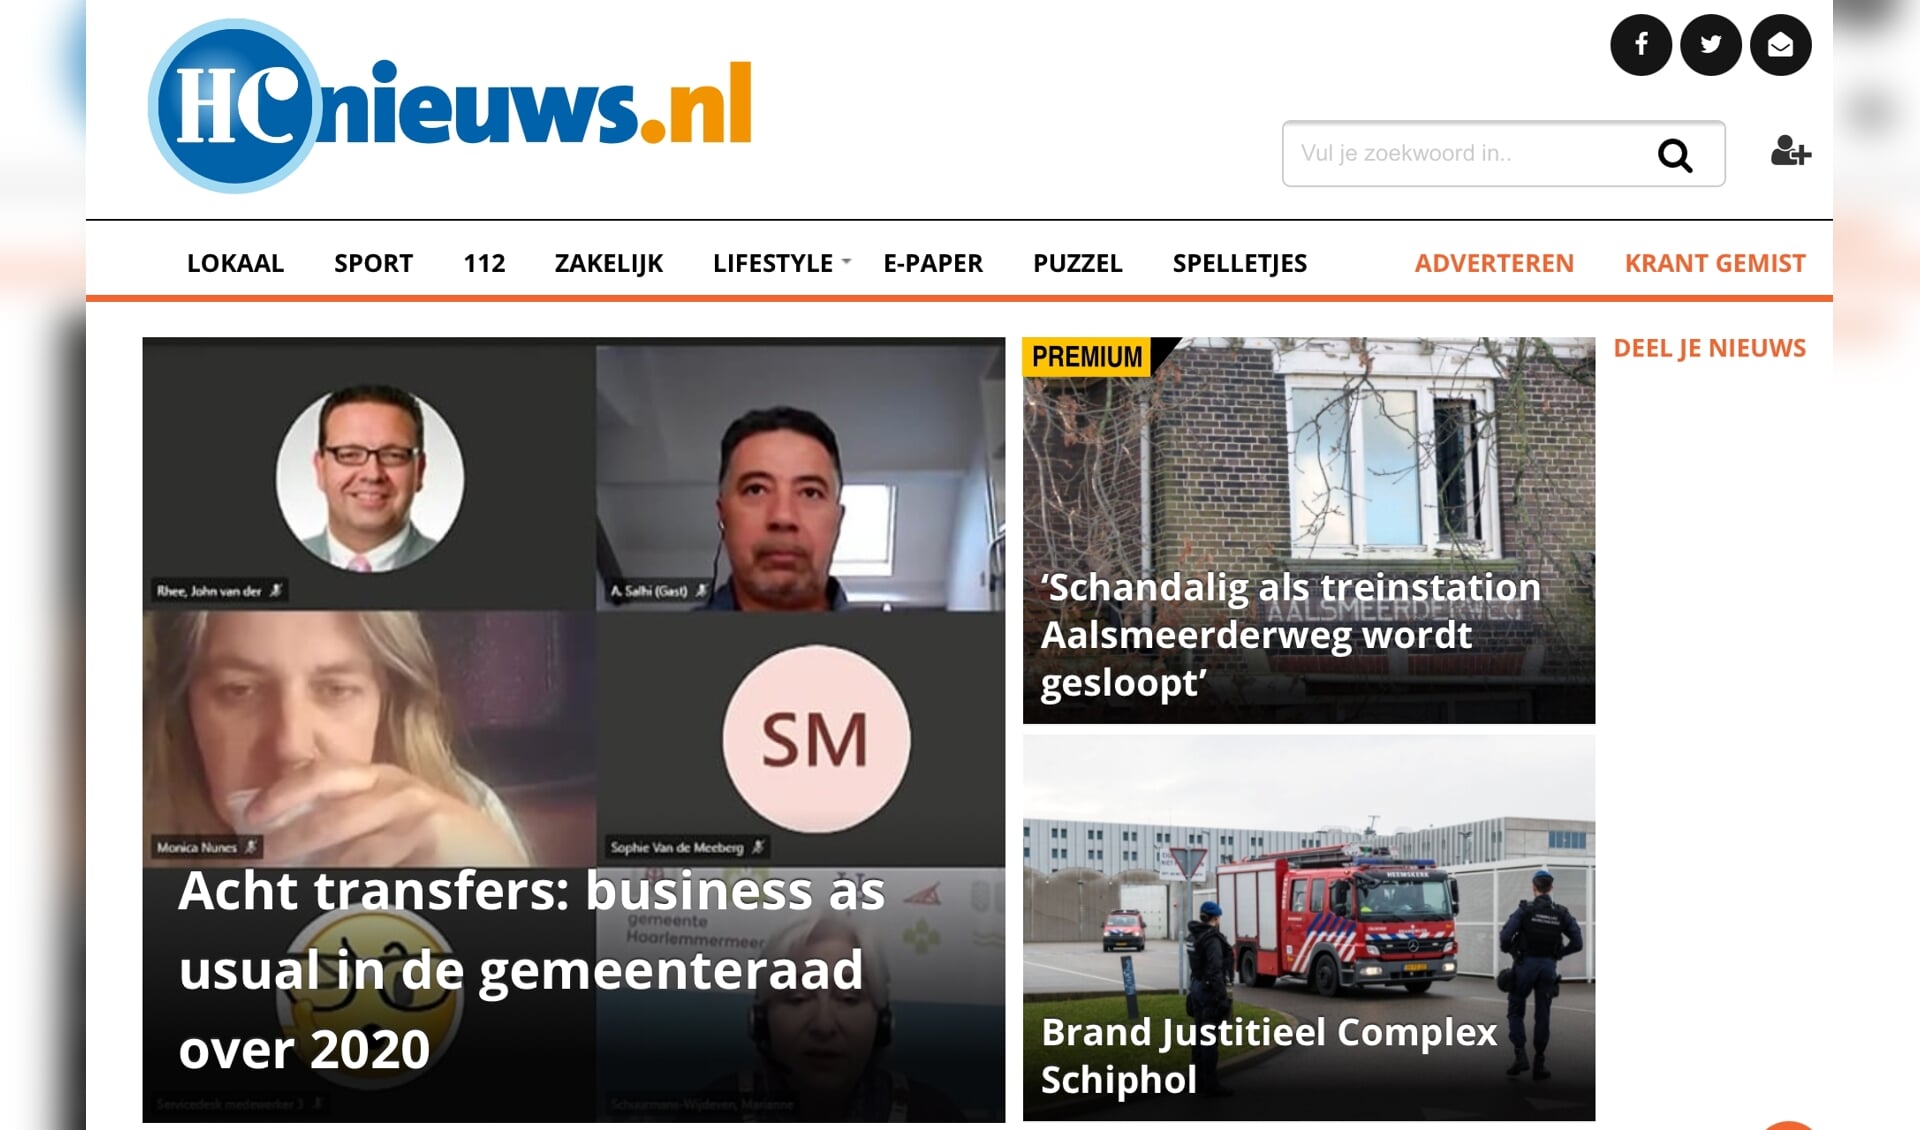 De website van HCnieuws is een bekend nieuwsplatform in Haarlemmermeer. 